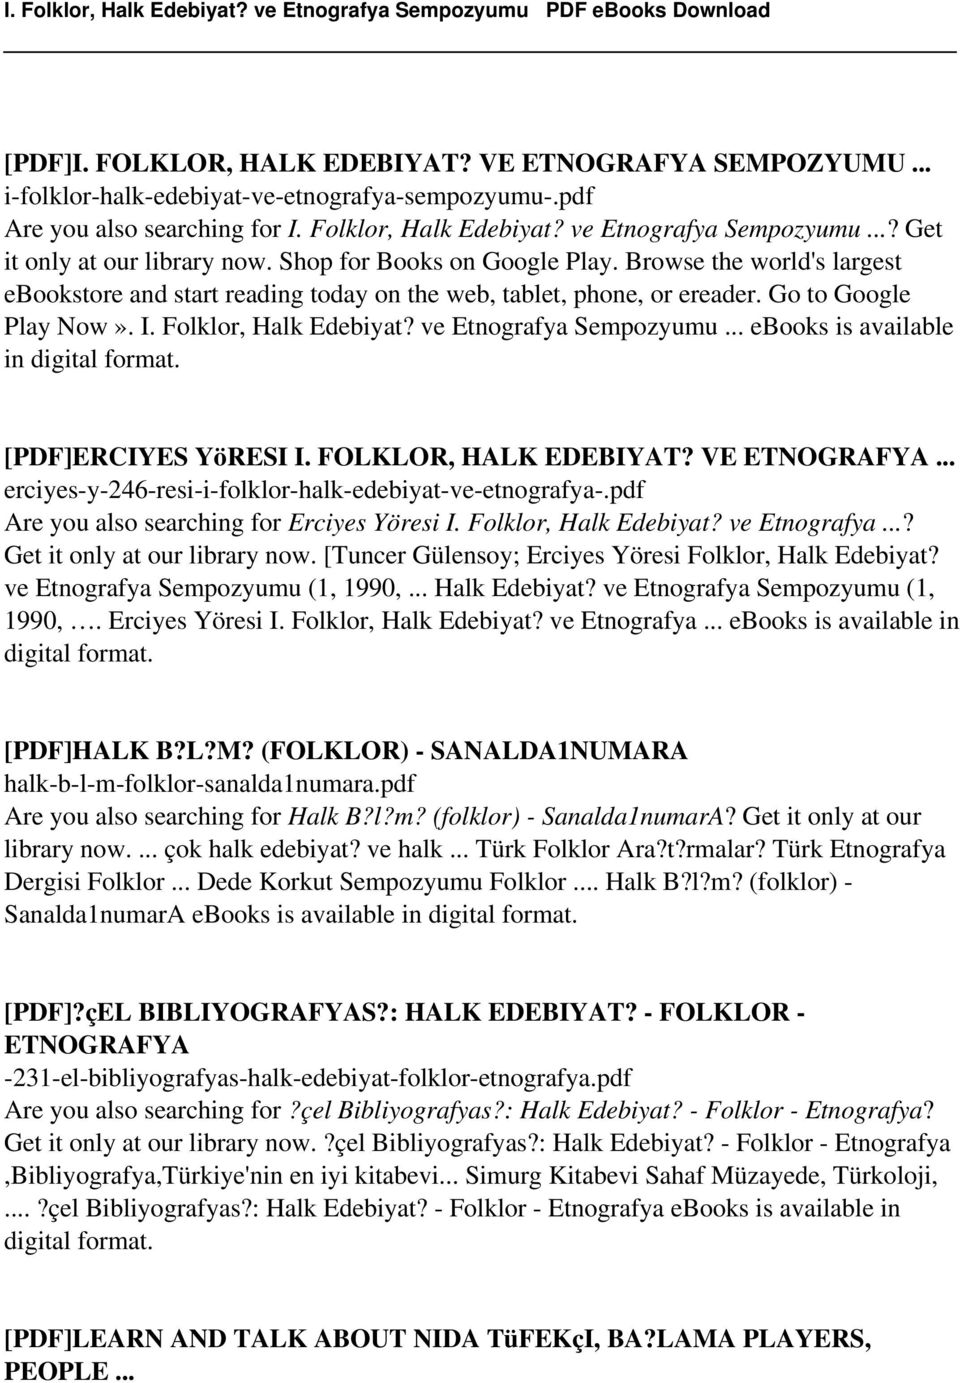 Folklor, Halk Edebiyat? ve Etnografya Sempozyumu... ebooks is available in digital format. [PDF]ERCIYES YöRESI I. FOLKLOR, HALK EDEBIYAT? VE ETNOGRAFYA.